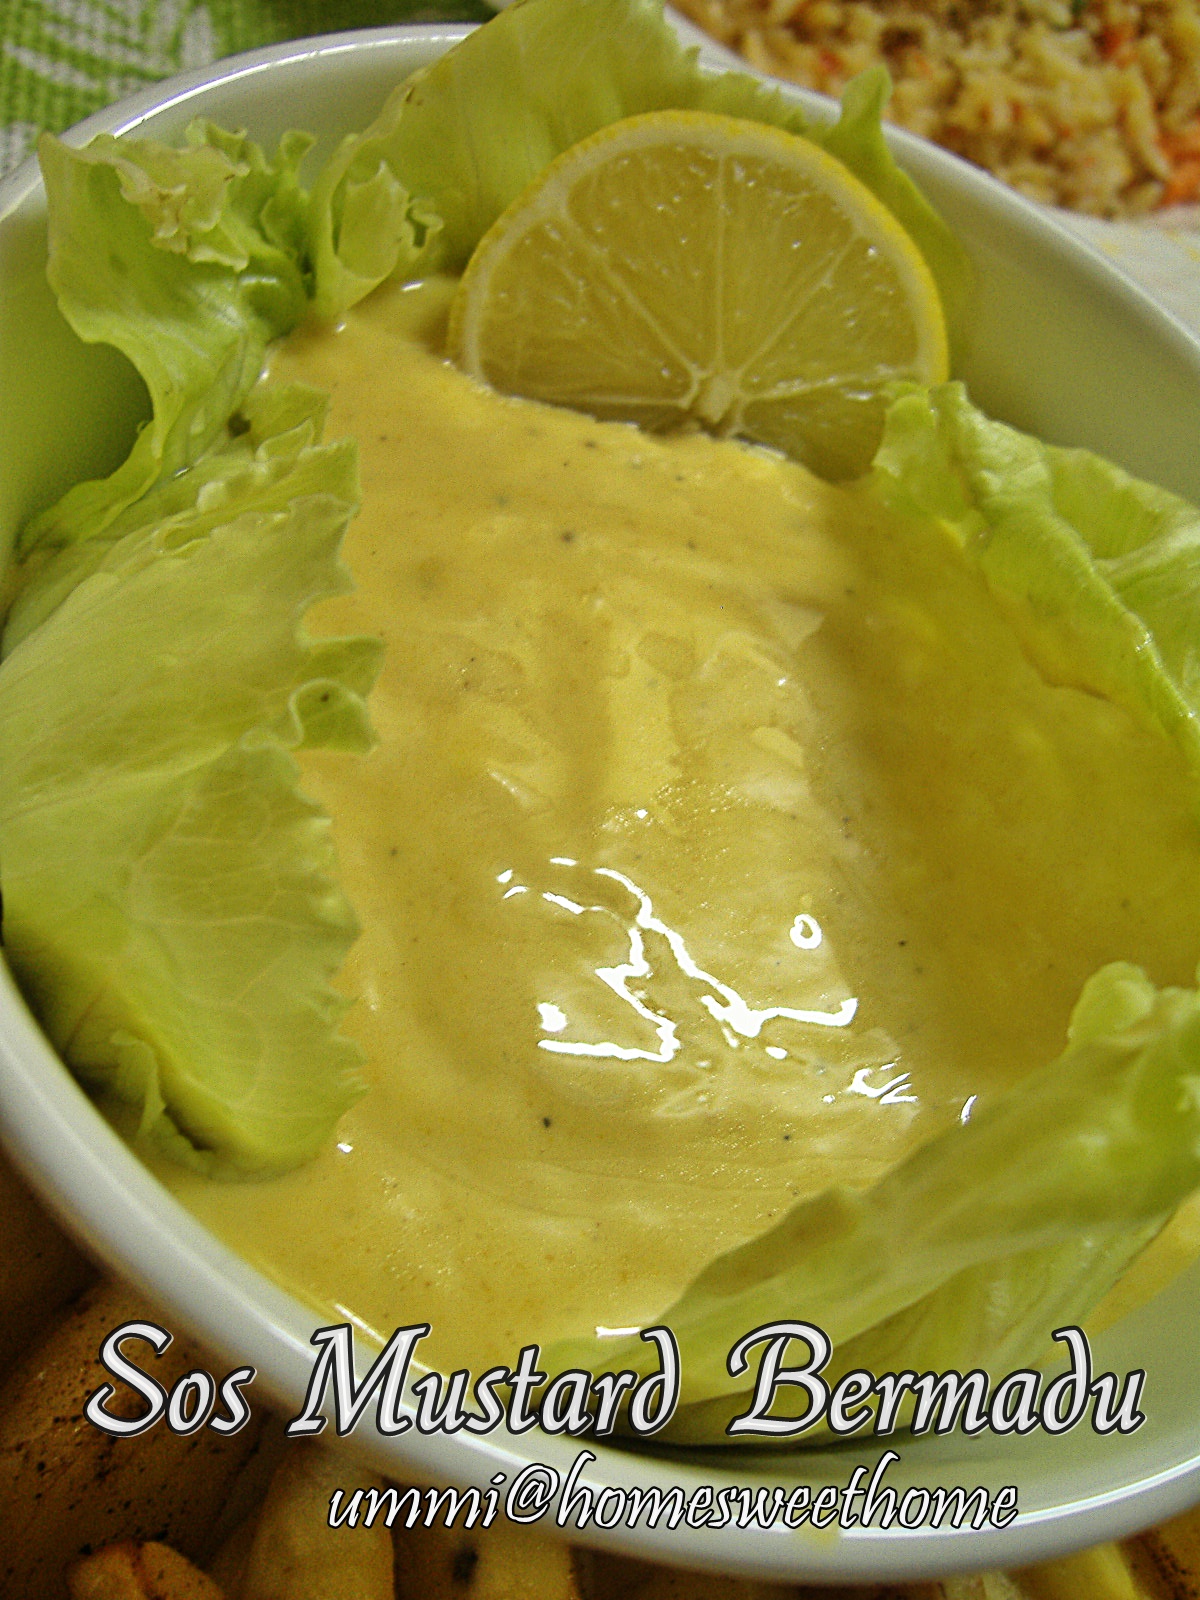 Home Sweet Home: Sos Mustard Bermadu